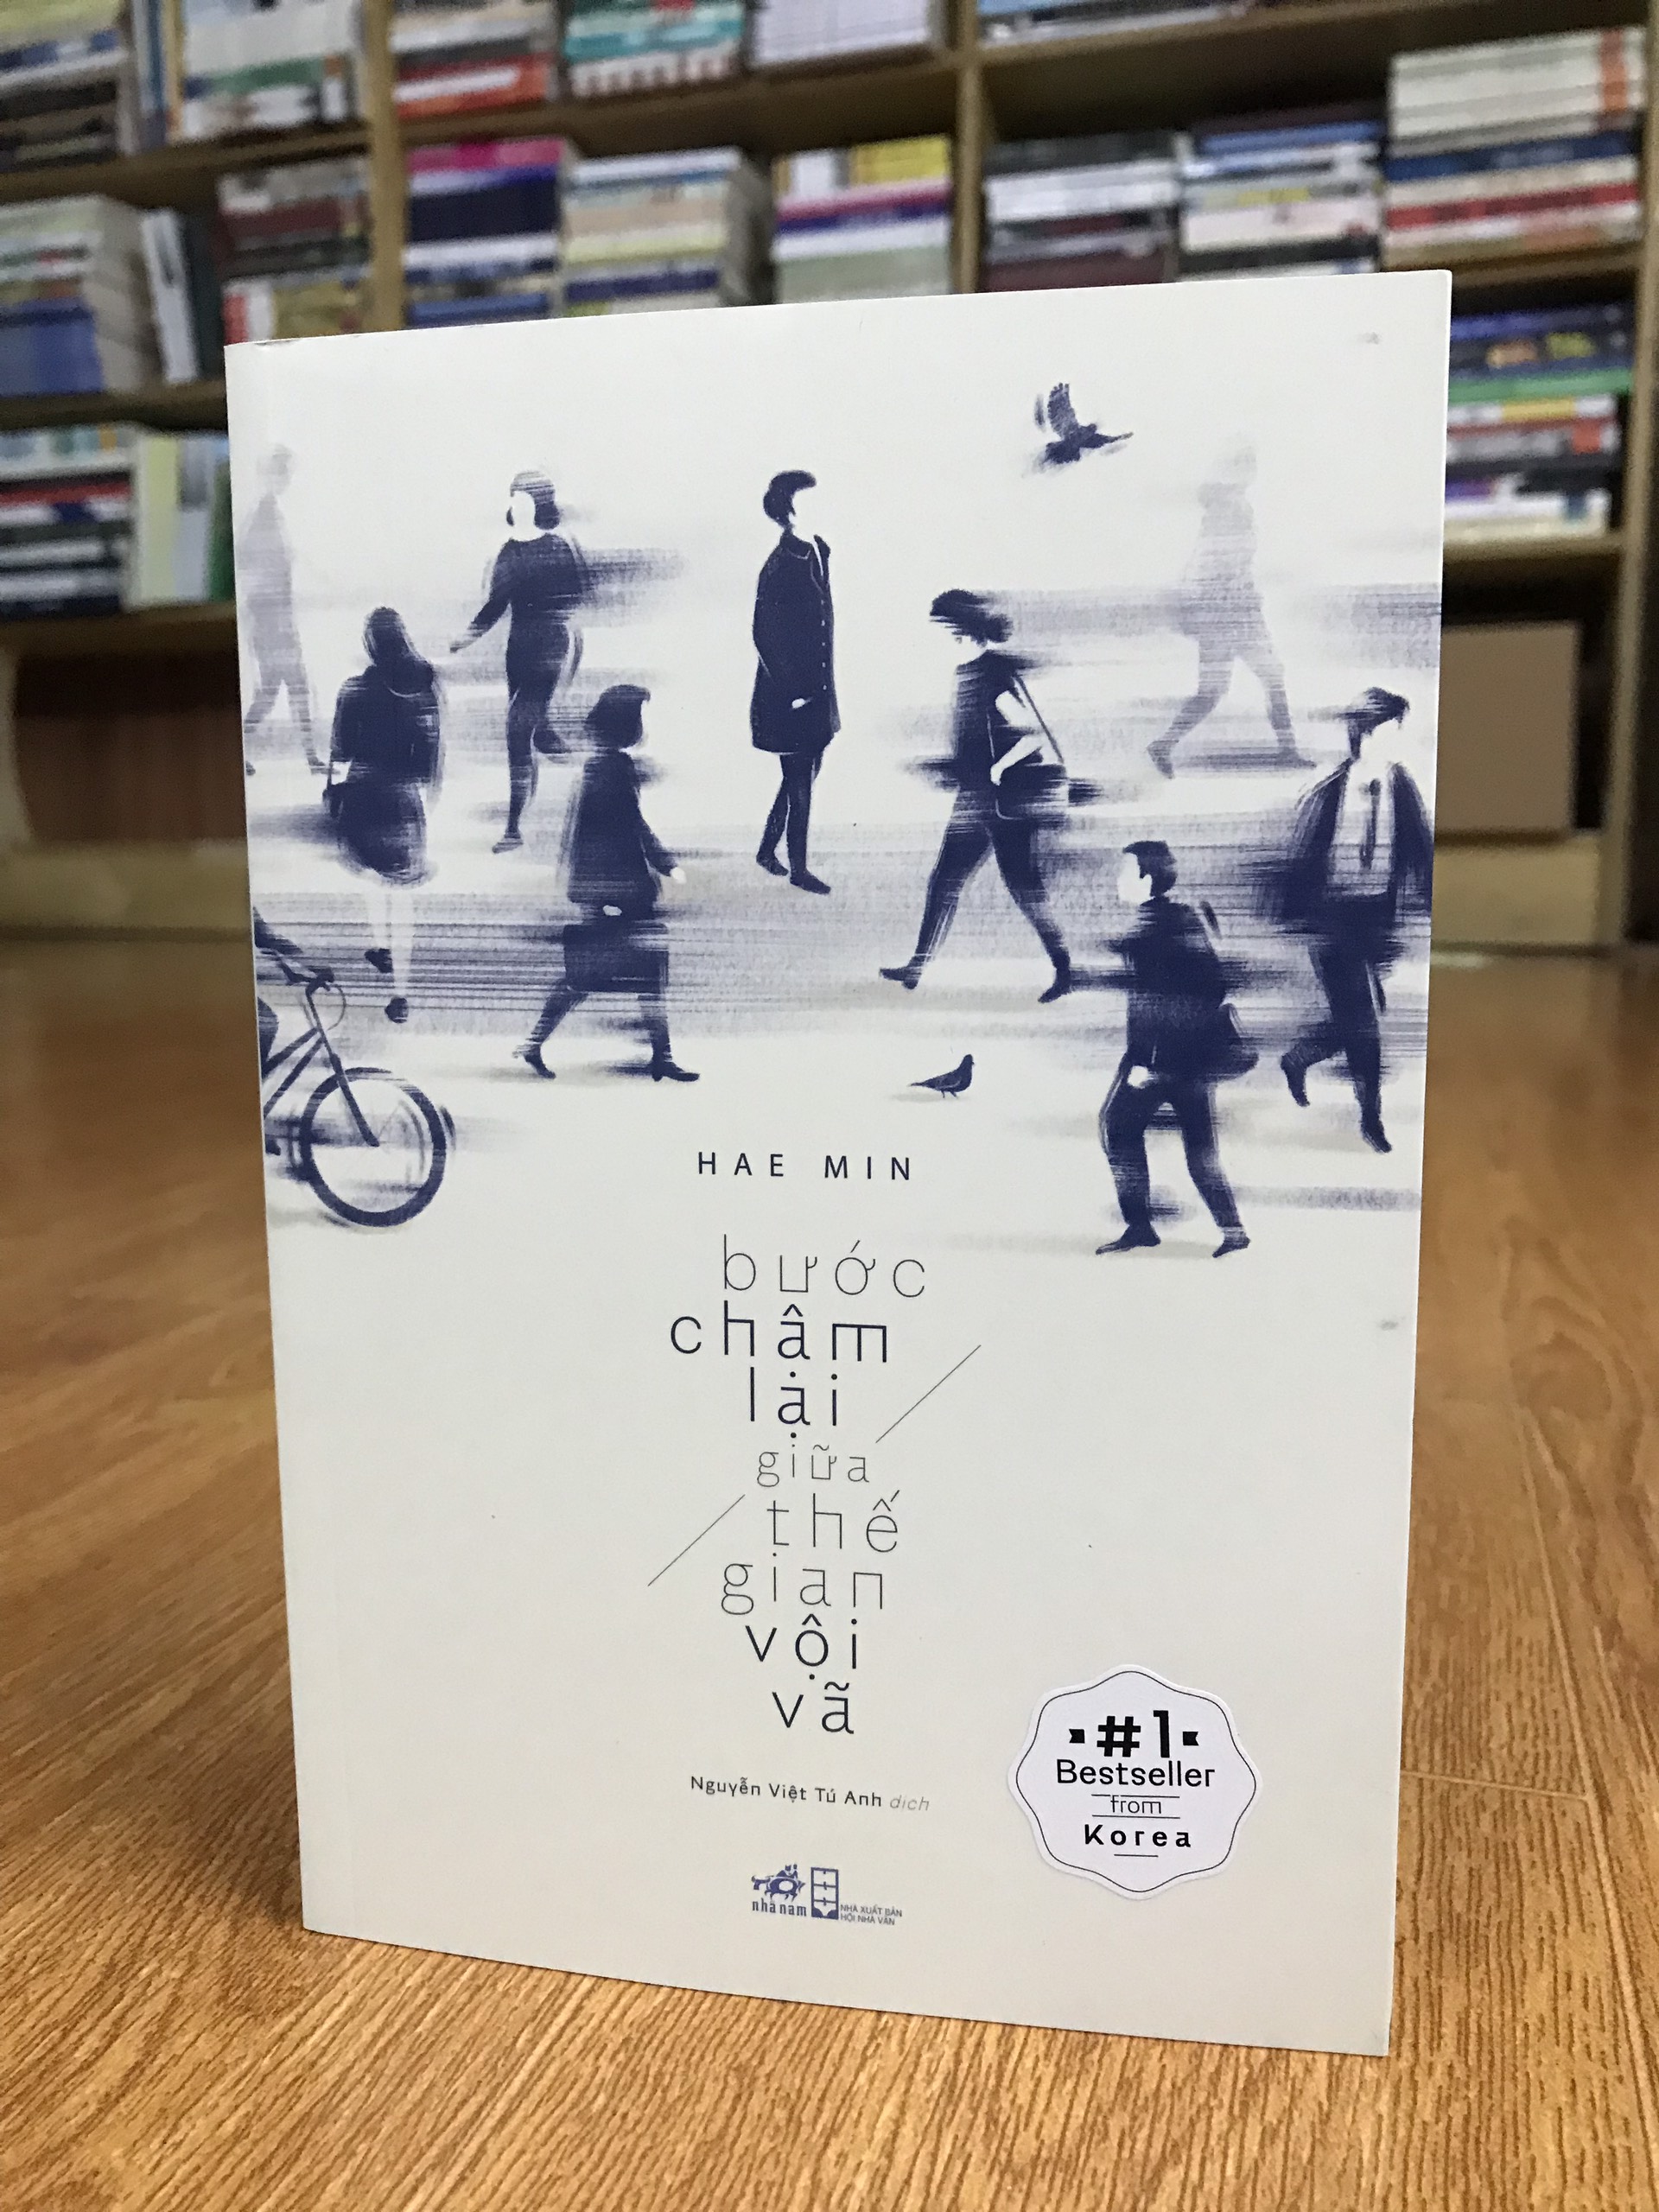 Combo sách văn học Hàn Quốc - Nhật Bản: Rừng Nauy Haruki Murakami + Bước Chậm Lại Giữa Thế Gian Vội Vã Hae Min (tặng kèm bookmark)